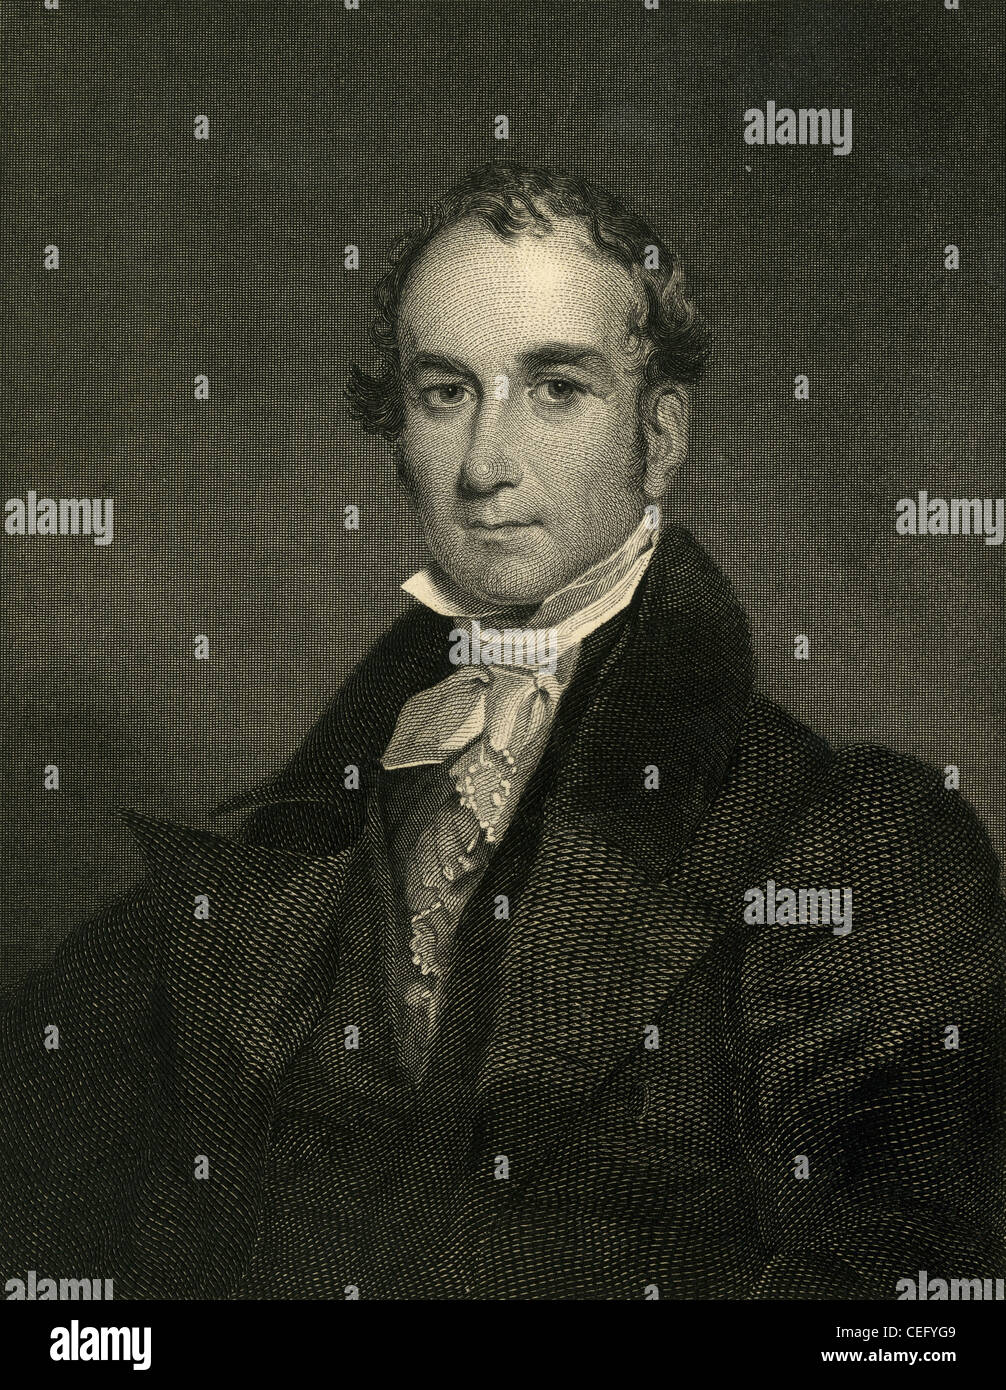 Circa 1850s engraving, Louis McLane Stock Photo - Alamy